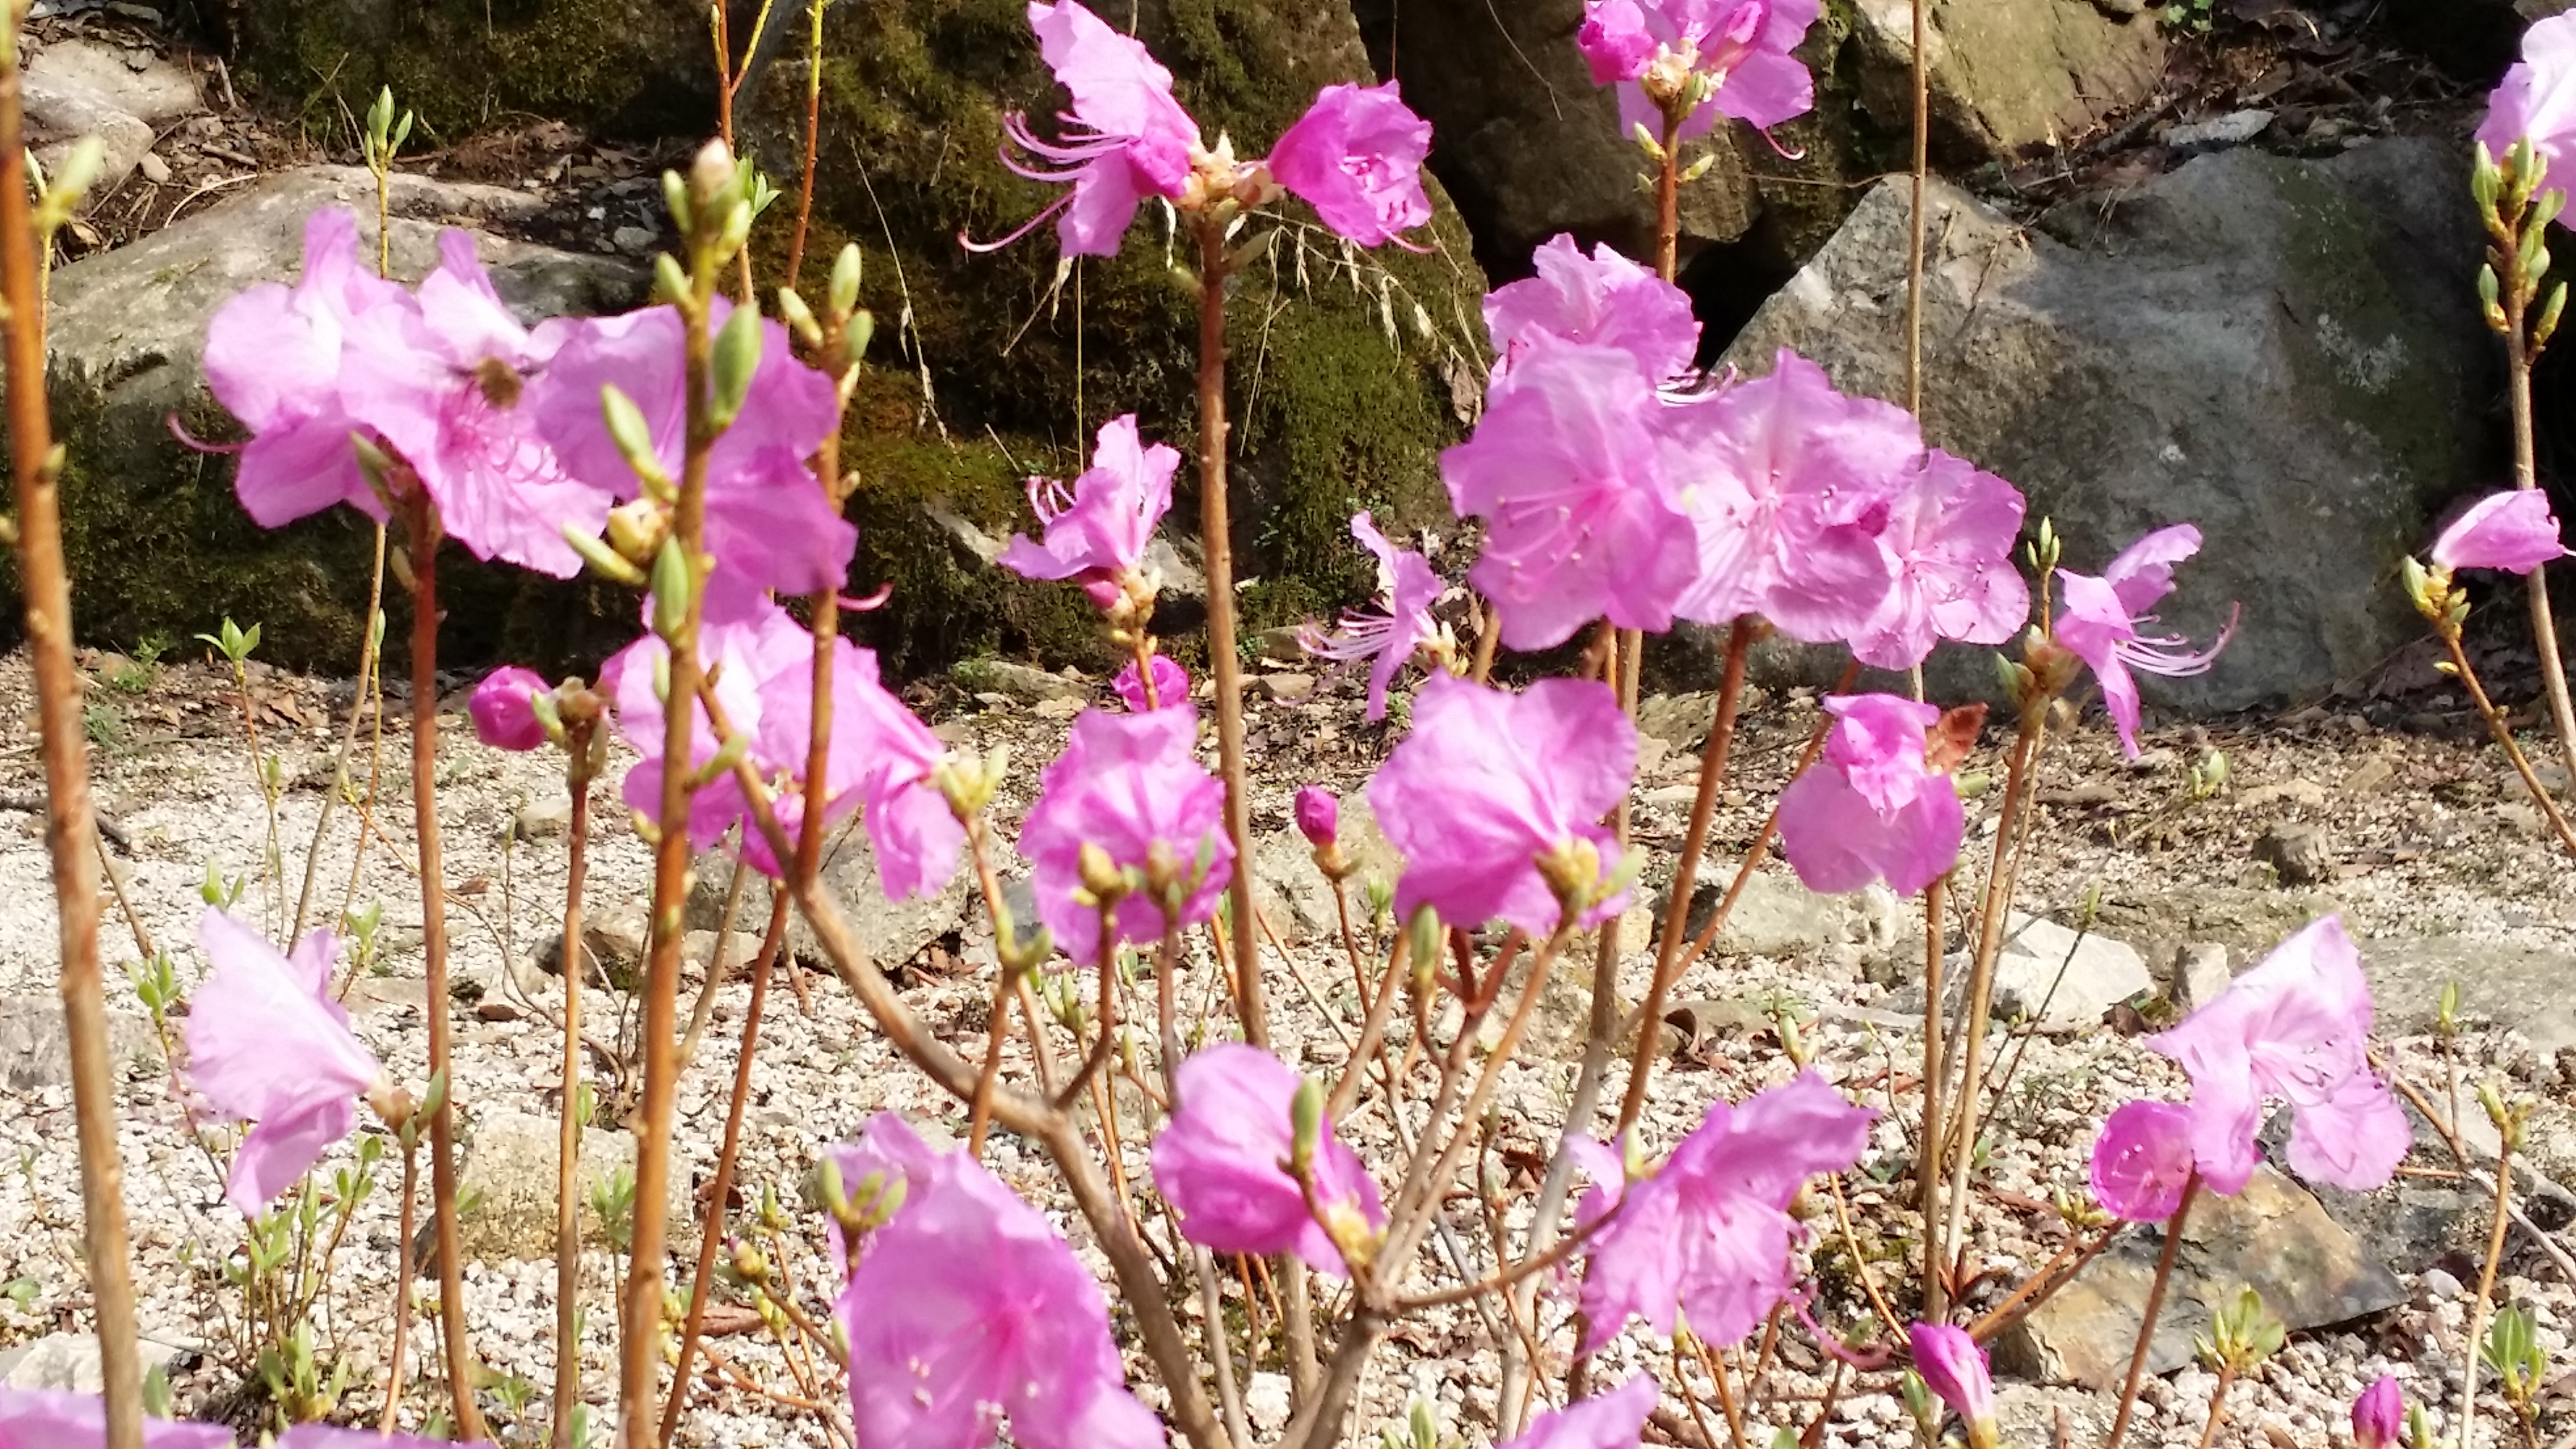 대아수목원 봄꽃들(3월 30일 촬영) 큰 이미지[마우스 클릭 시 창닫기]